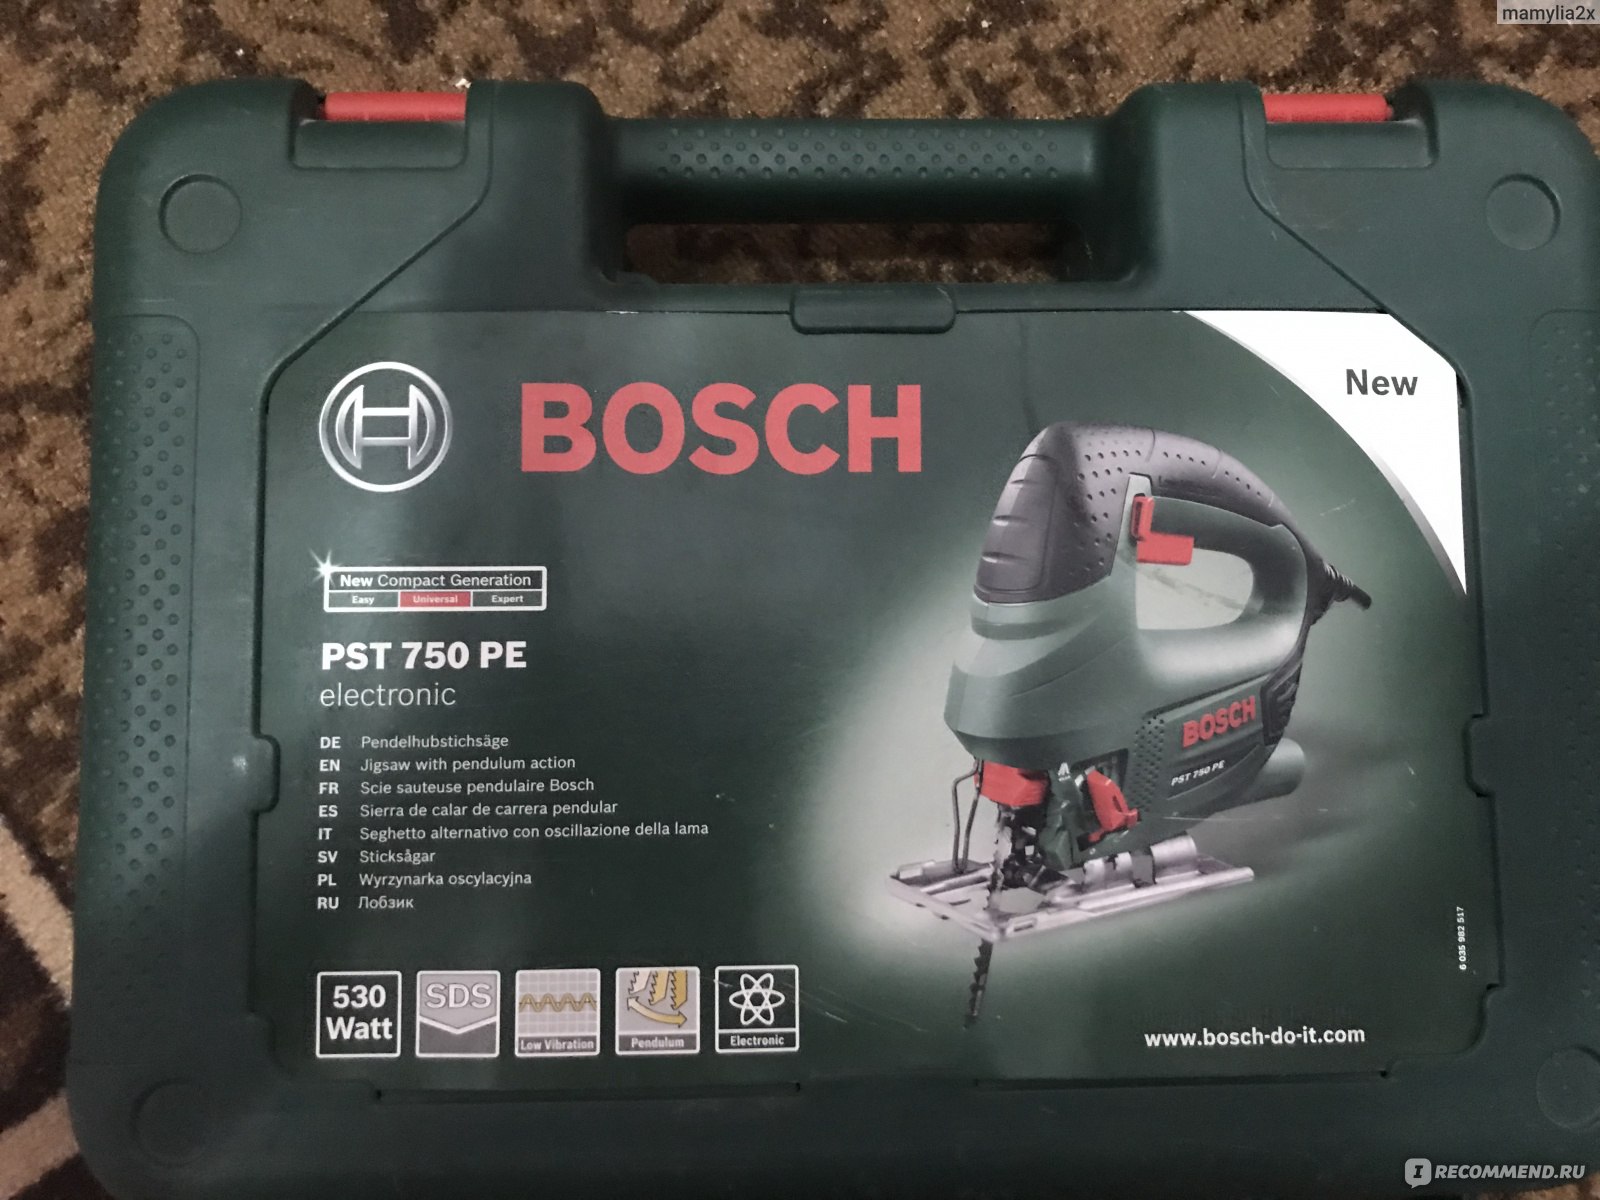 Bosch PST 750 pe разобран